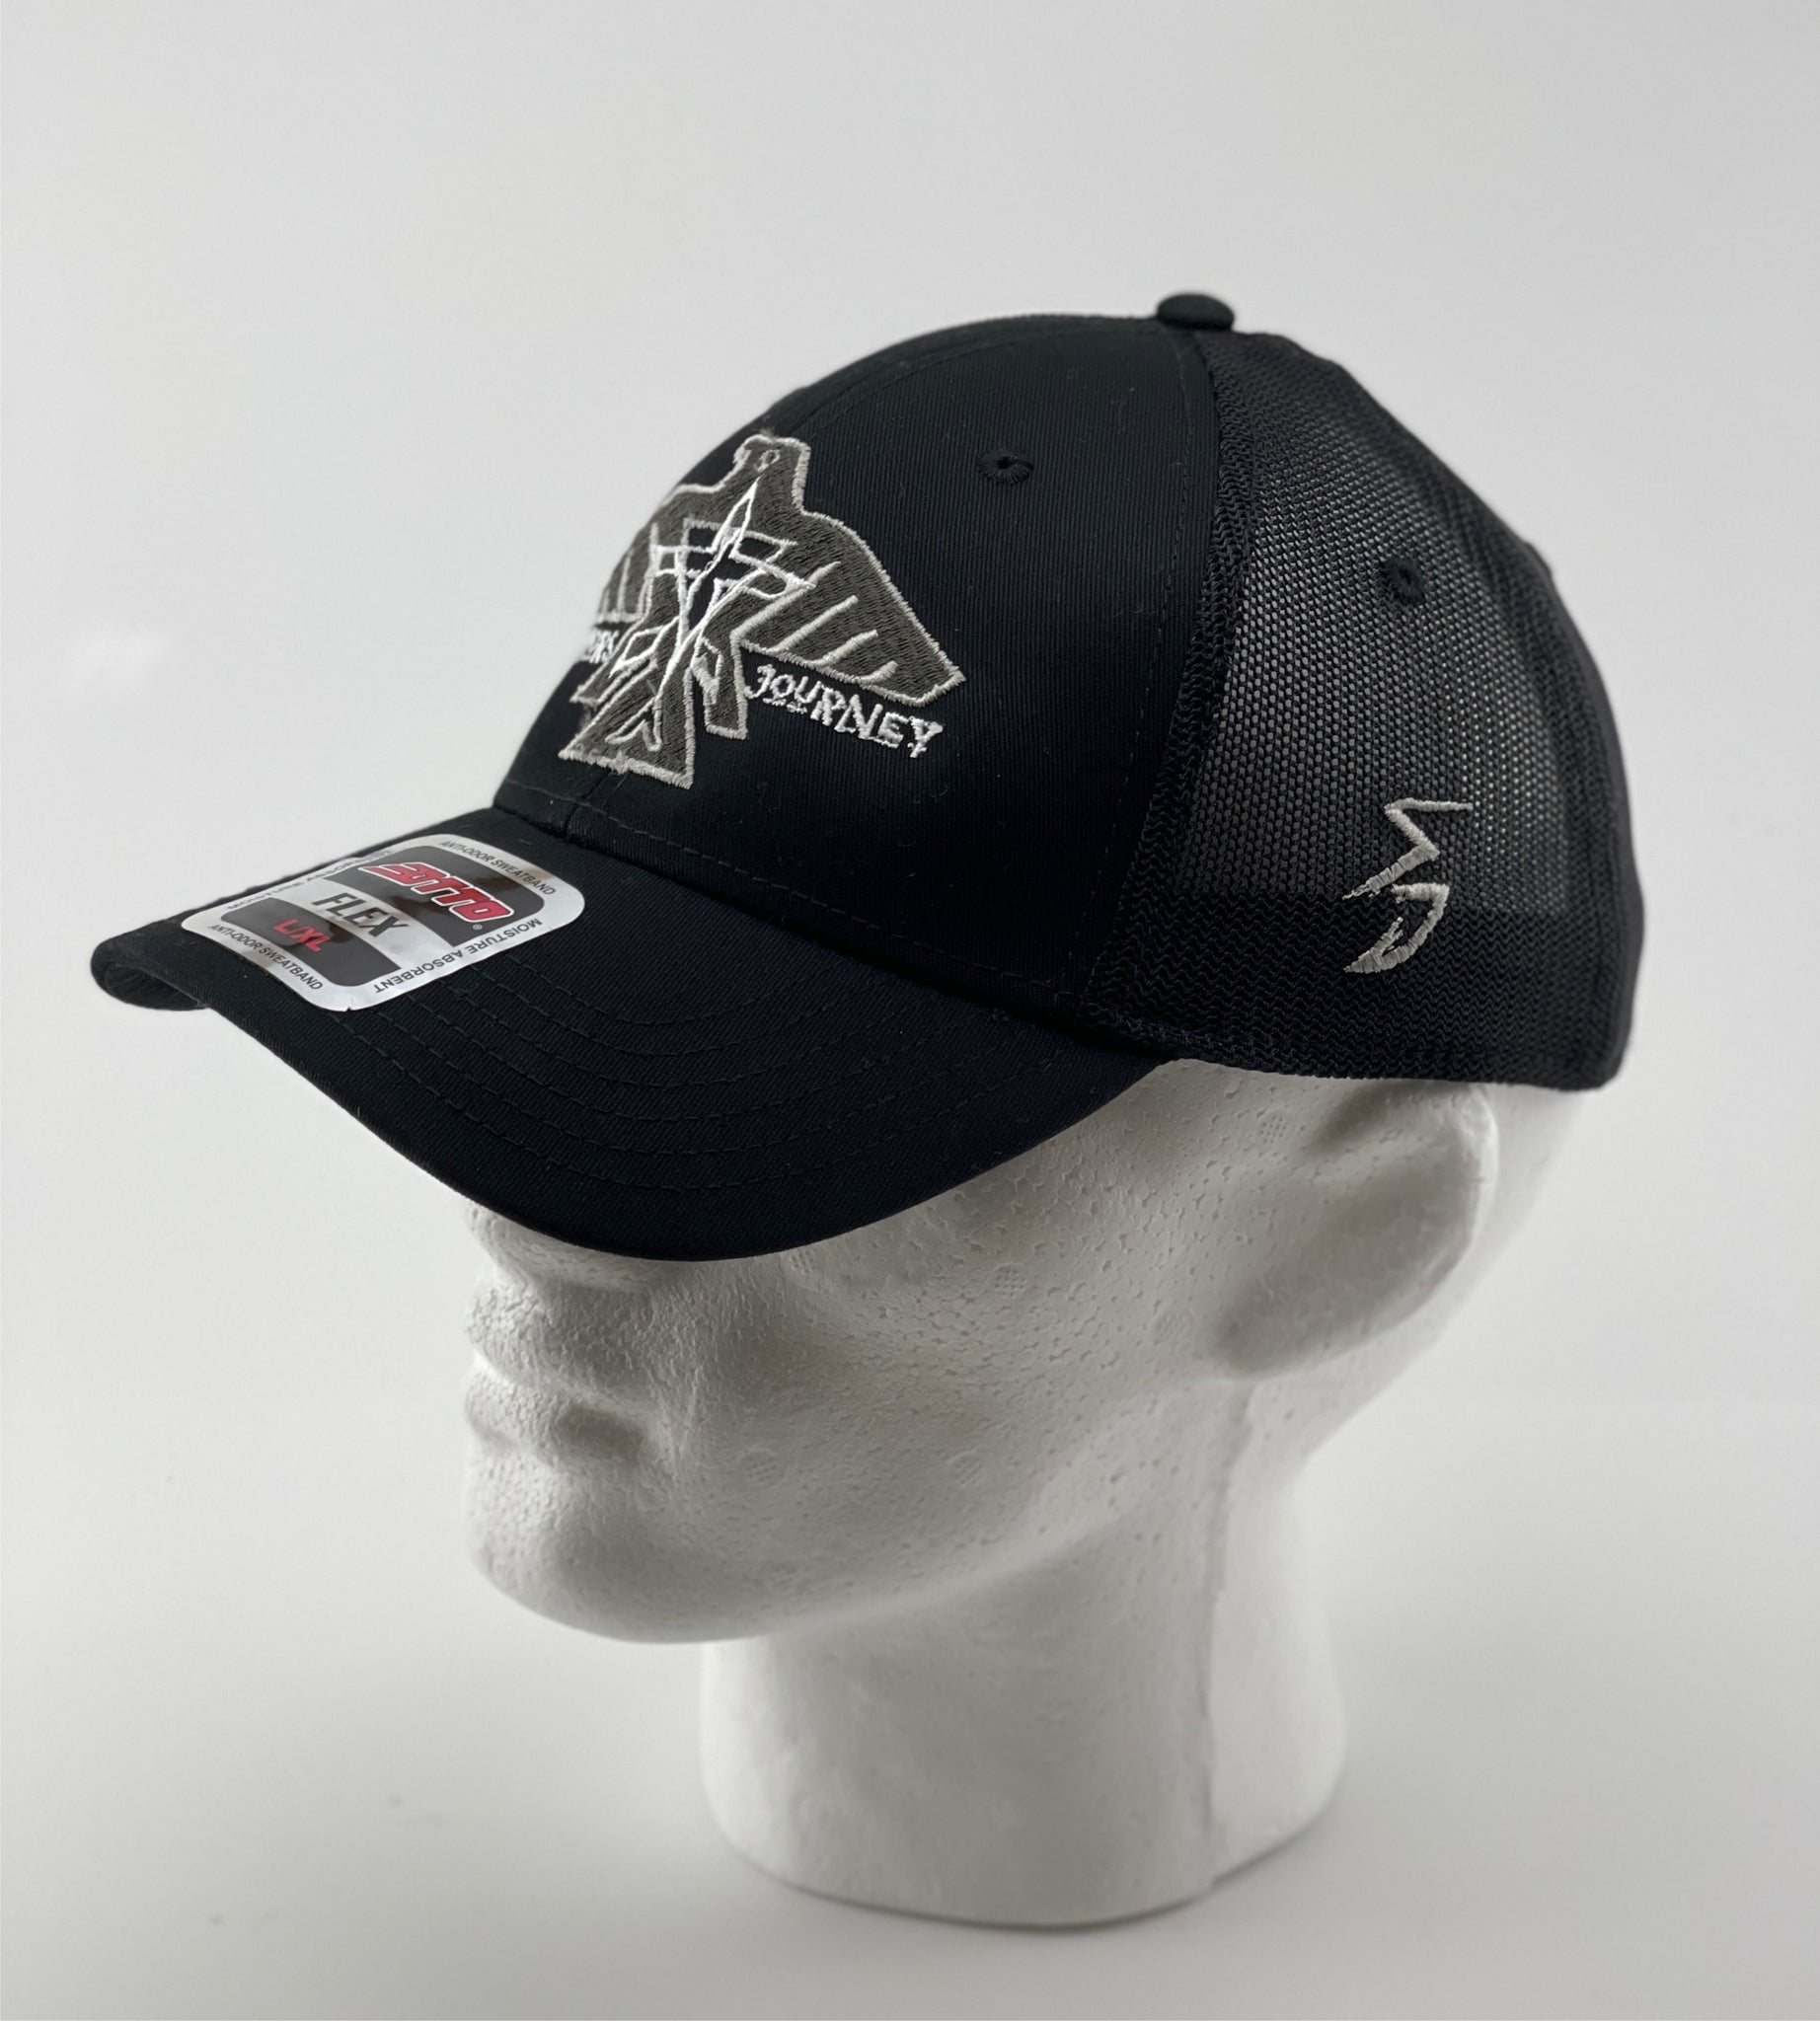 S.J. Grey/White Black/Metallic Logo (Flexfit) Hat